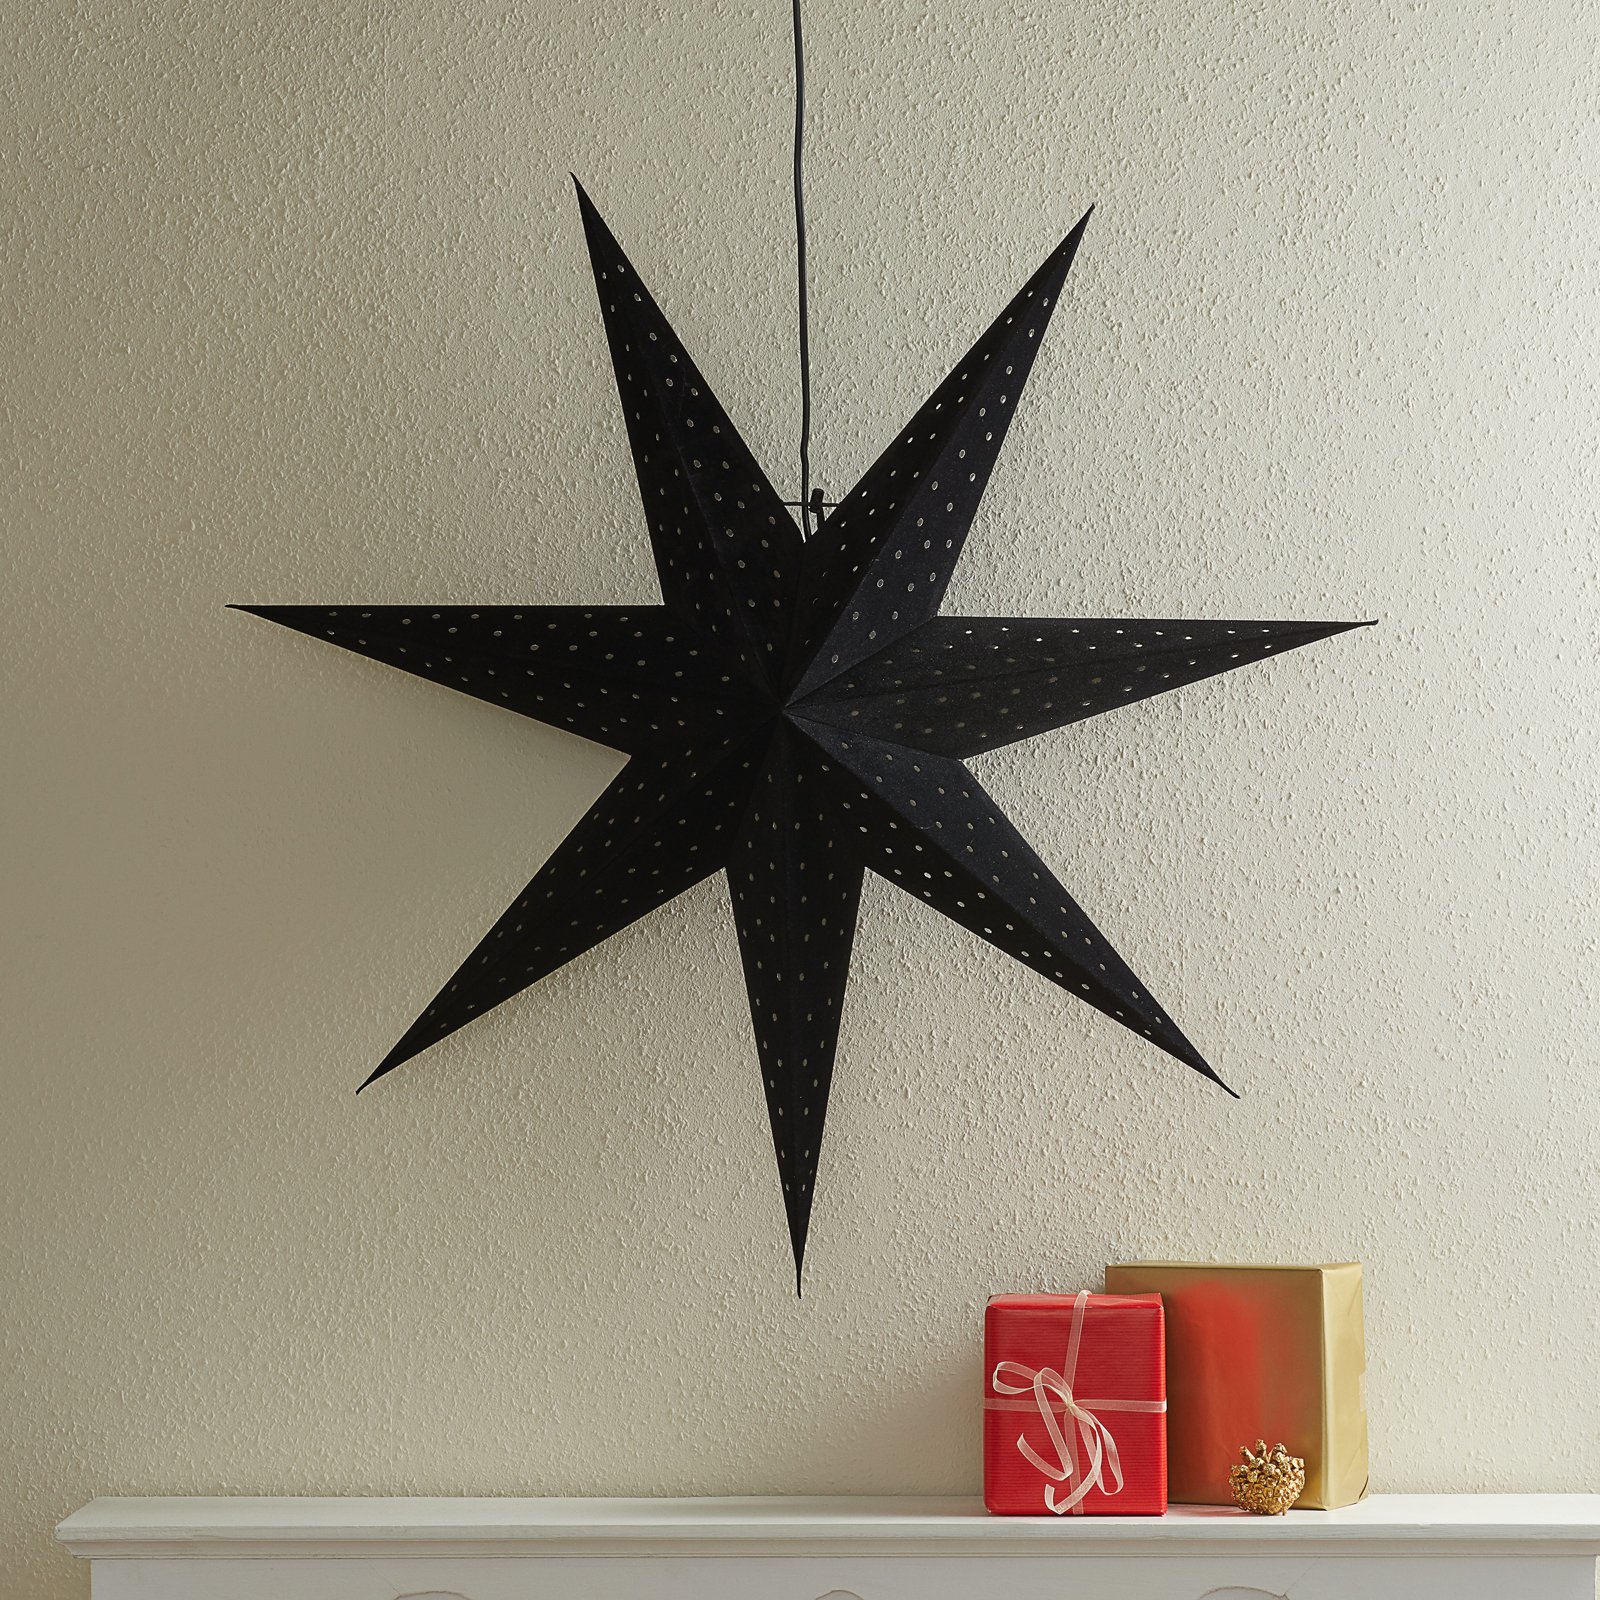 Star Clara for hanging, velvet look Ø 75 cm, black